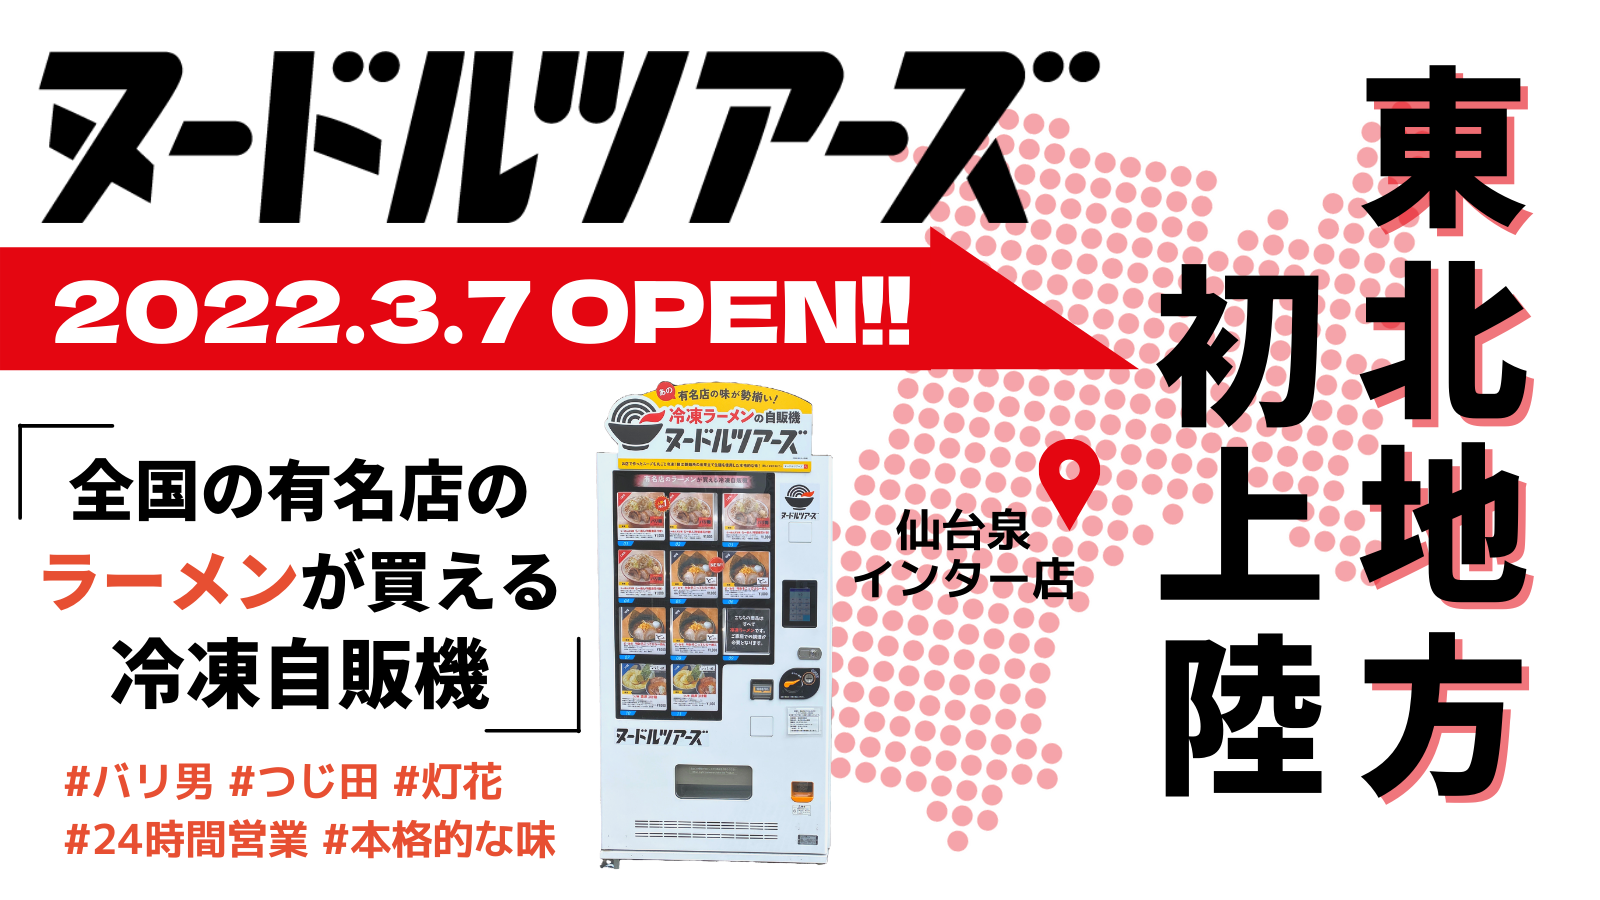 【東北初】東京の有名店のラーメンが買える自販機『ヌードルツアーズ』がついに仙台にも登場したみたい！